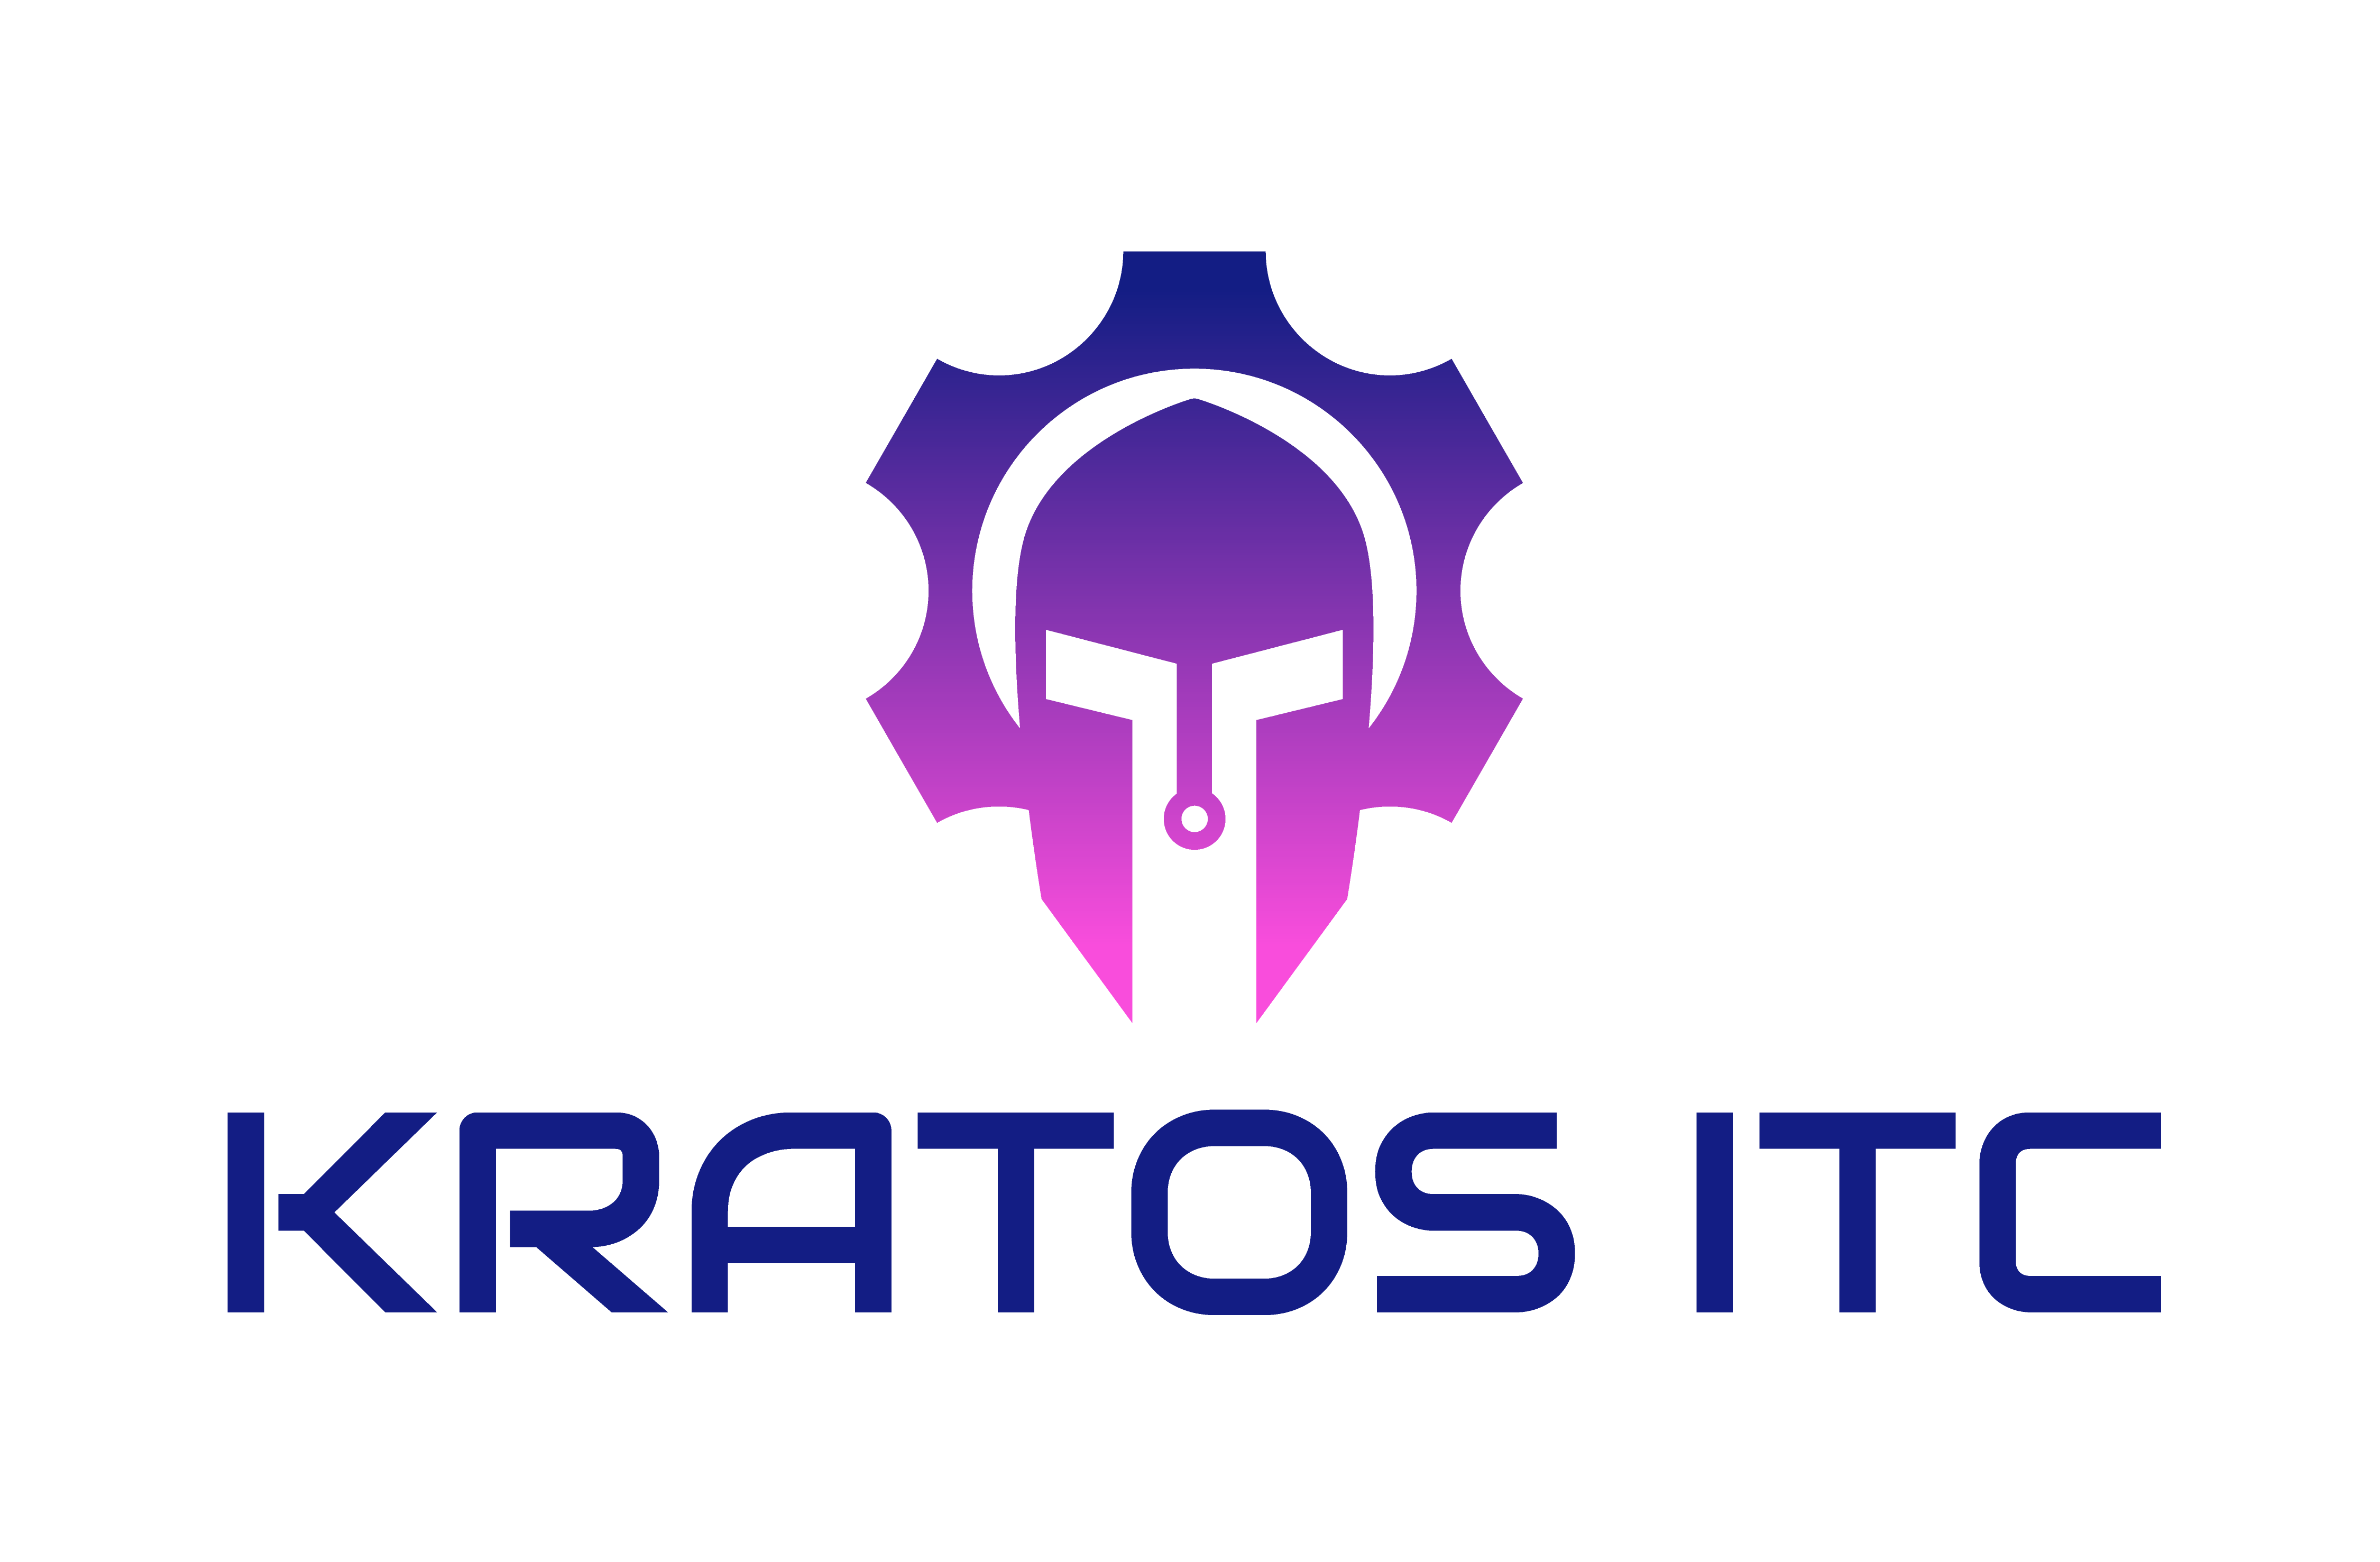 Kratos ITC